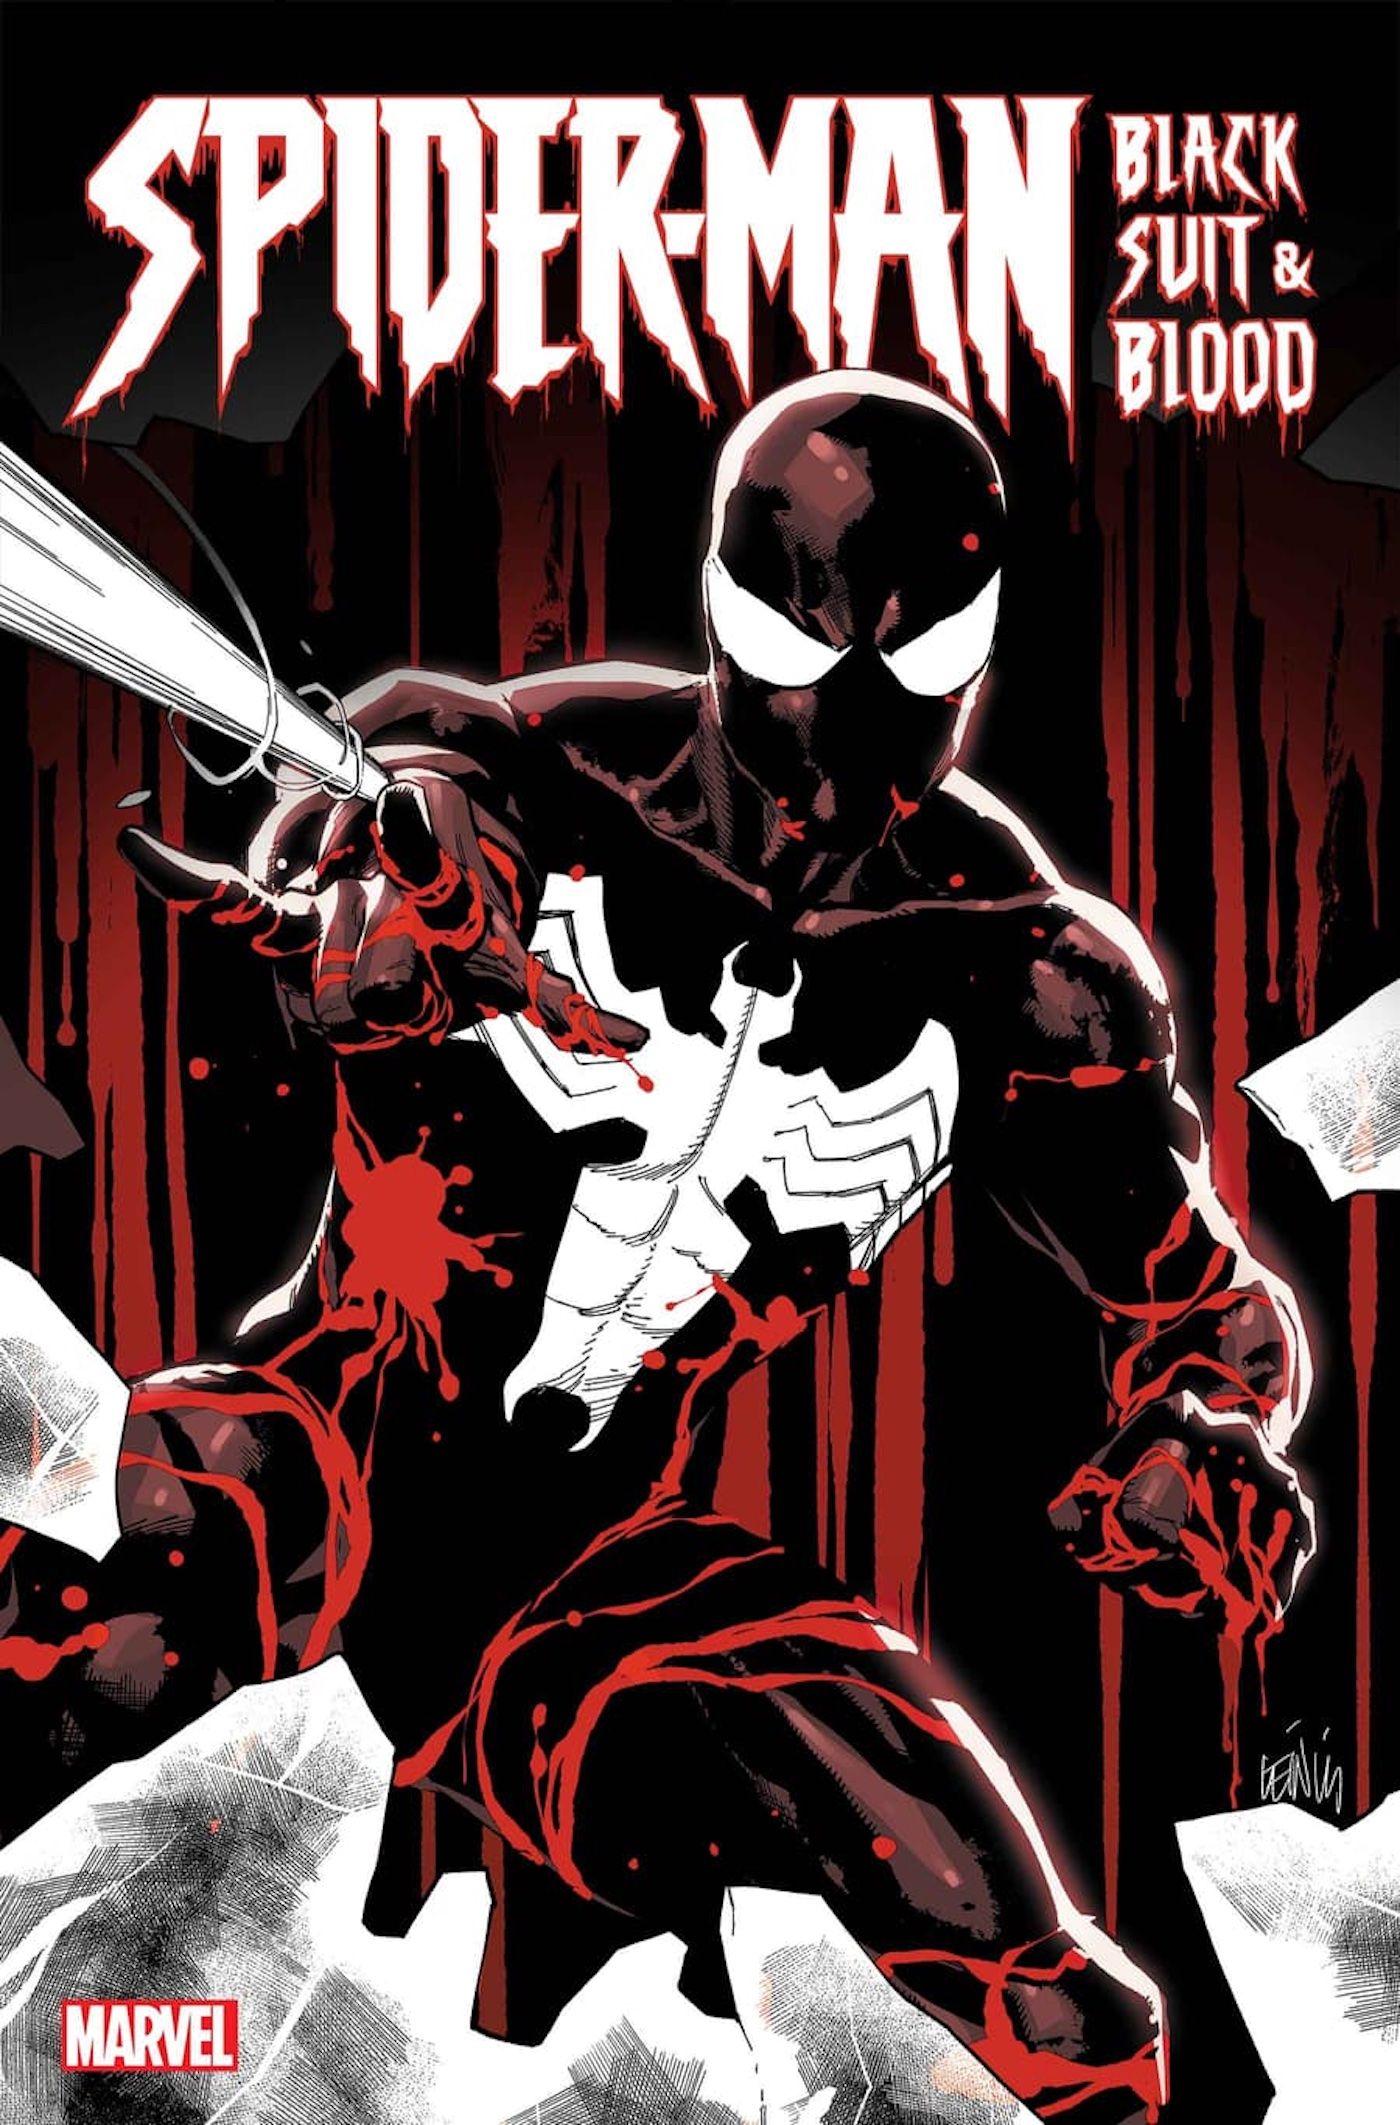 Capa do Homem-Aranha Terno Preto e Sangue Leinil Francis Yu